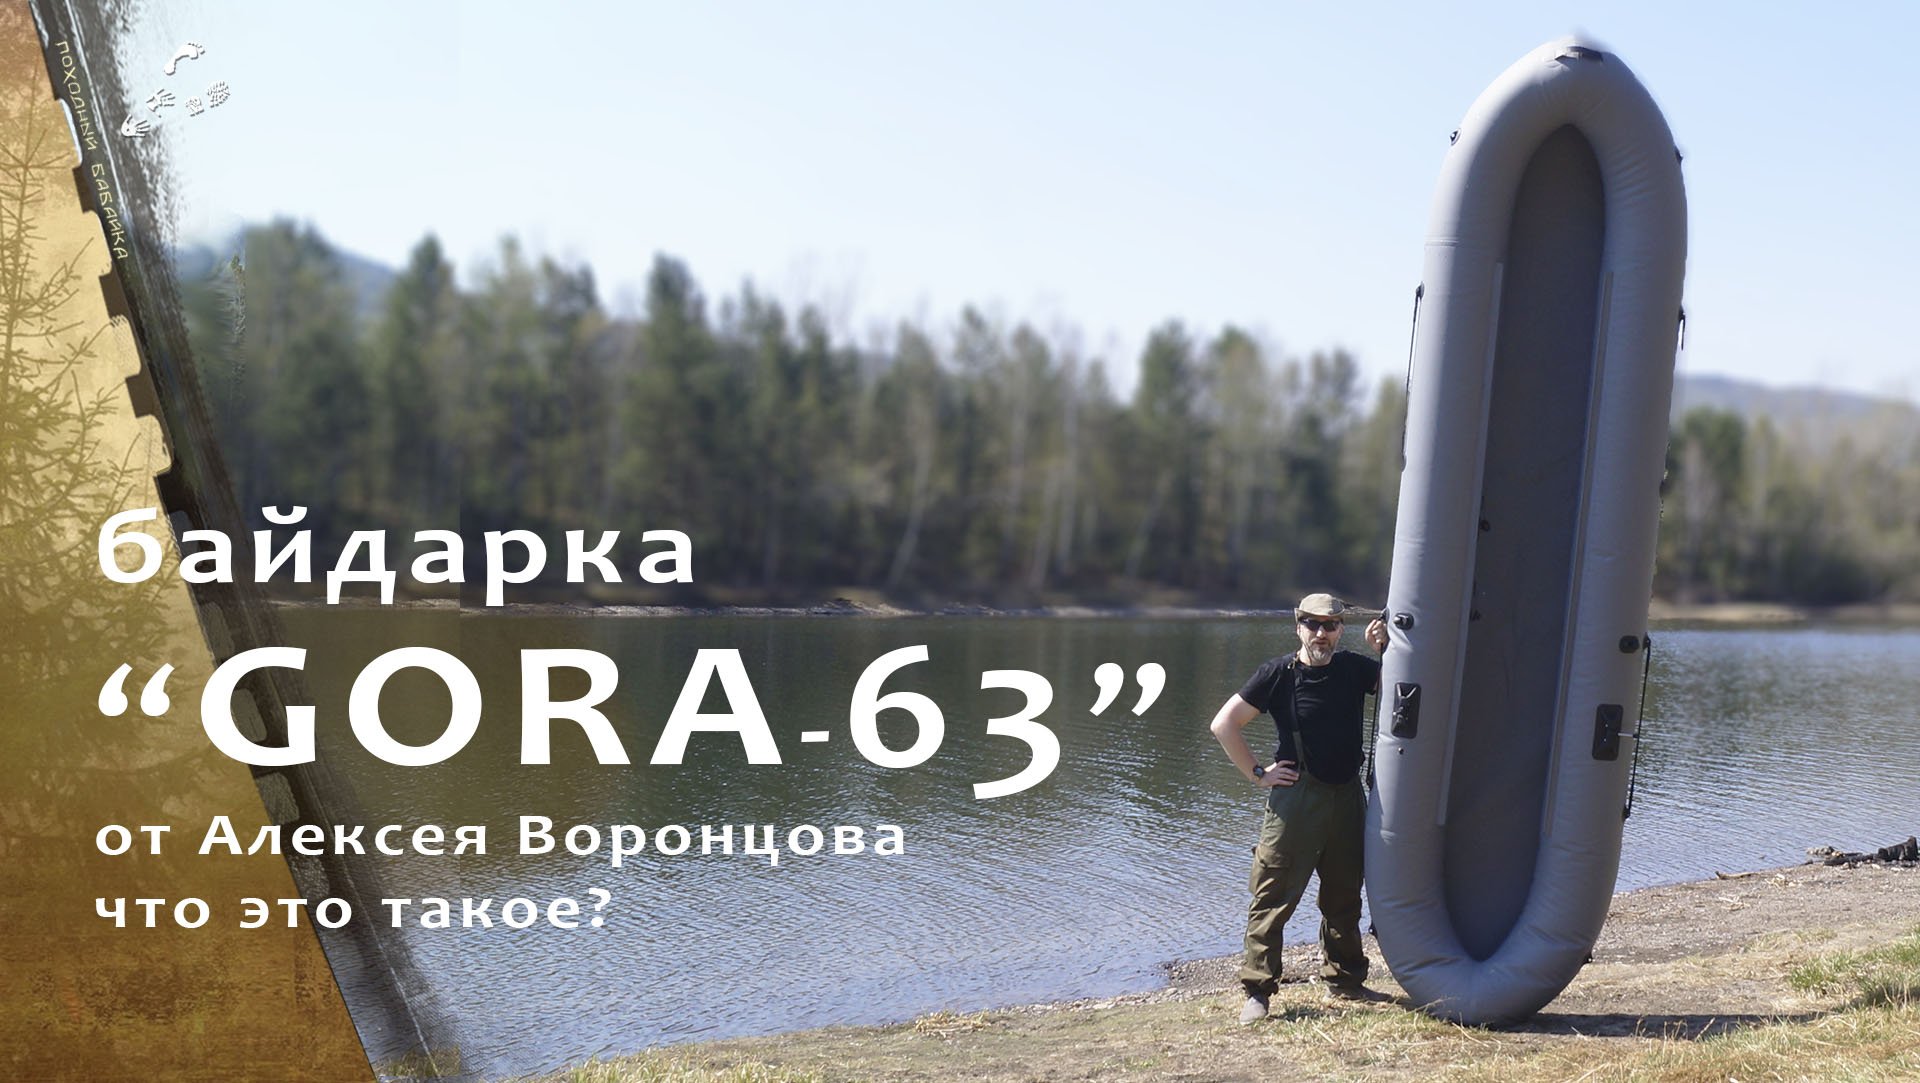 Байдарка Gora-63 распаковка и первый спуск на воду.